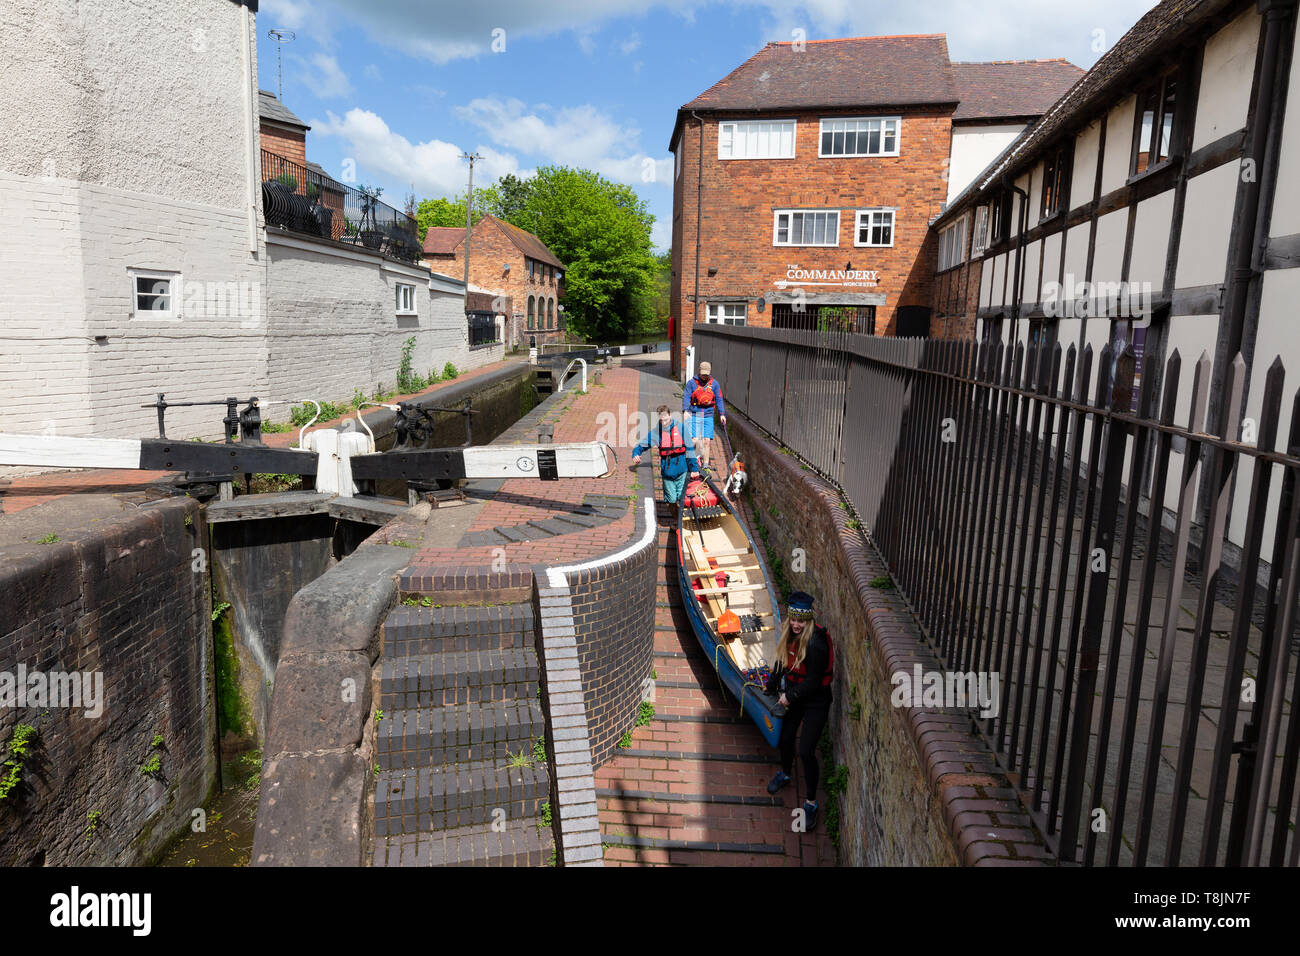 Worcester e Birmingham Canal - sollevamento persone una canoa attraverso una serratura, in commenda, Worcester city centre, Worcestershire Inghilterra REGNO UNITO Foto Stock